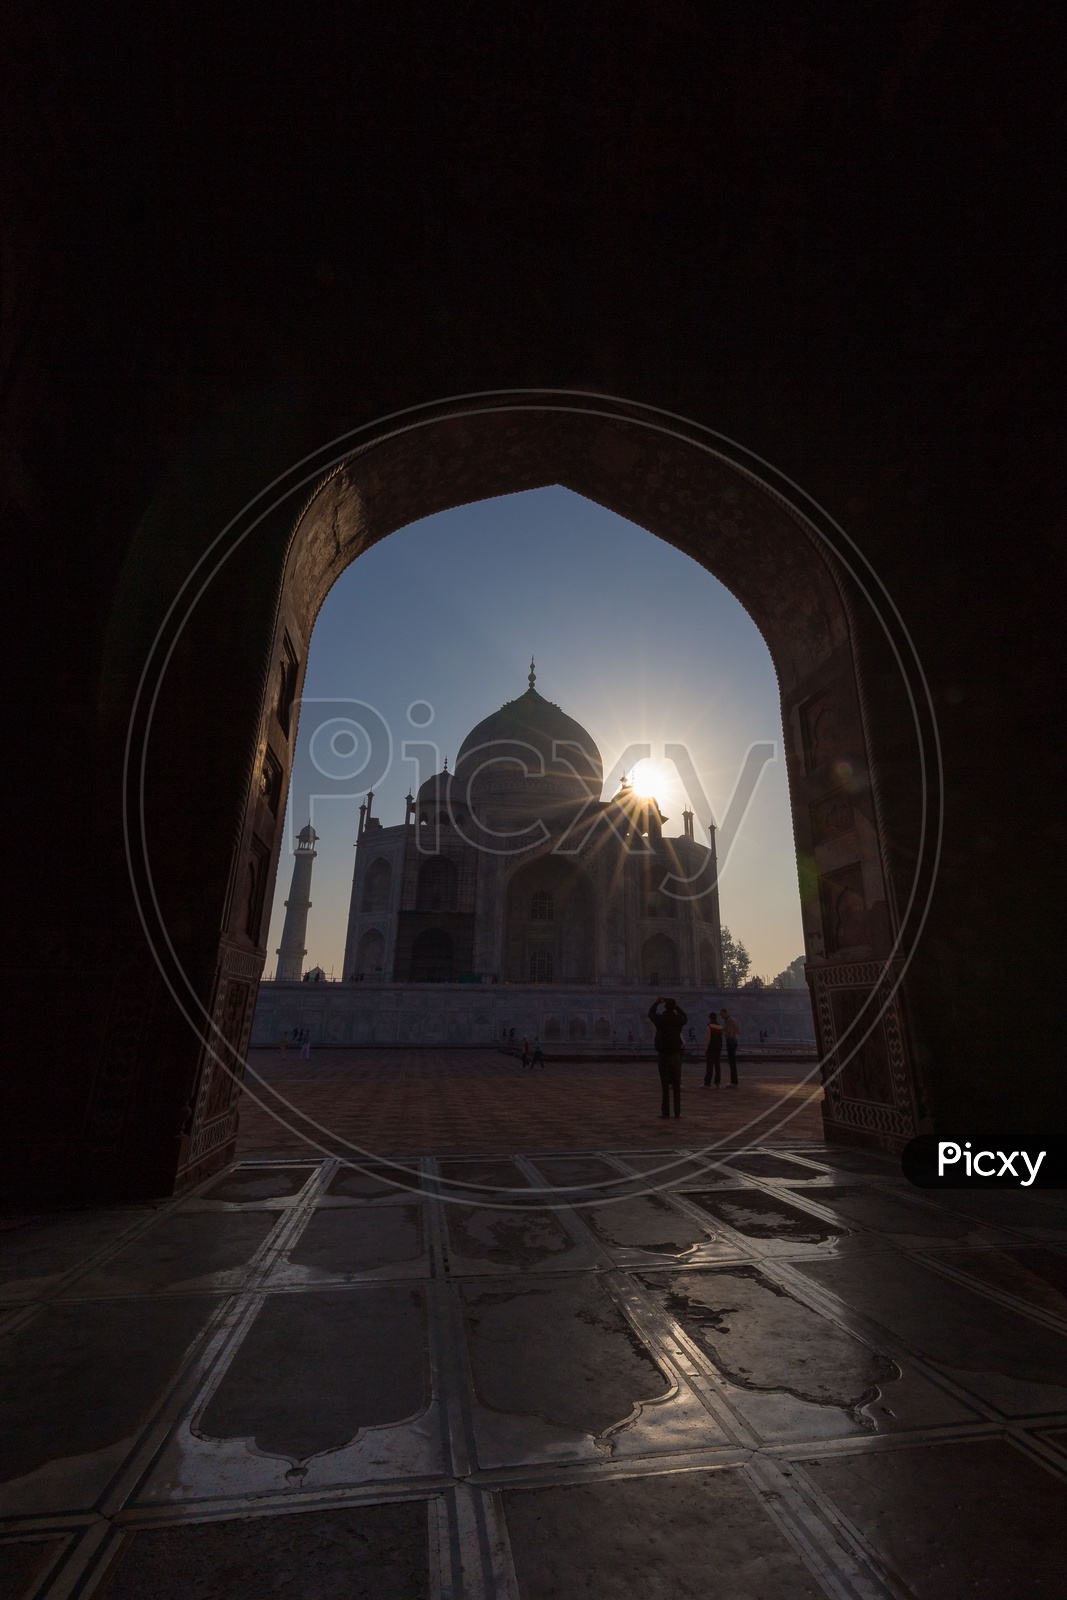 Taj Mahal view through an Arch